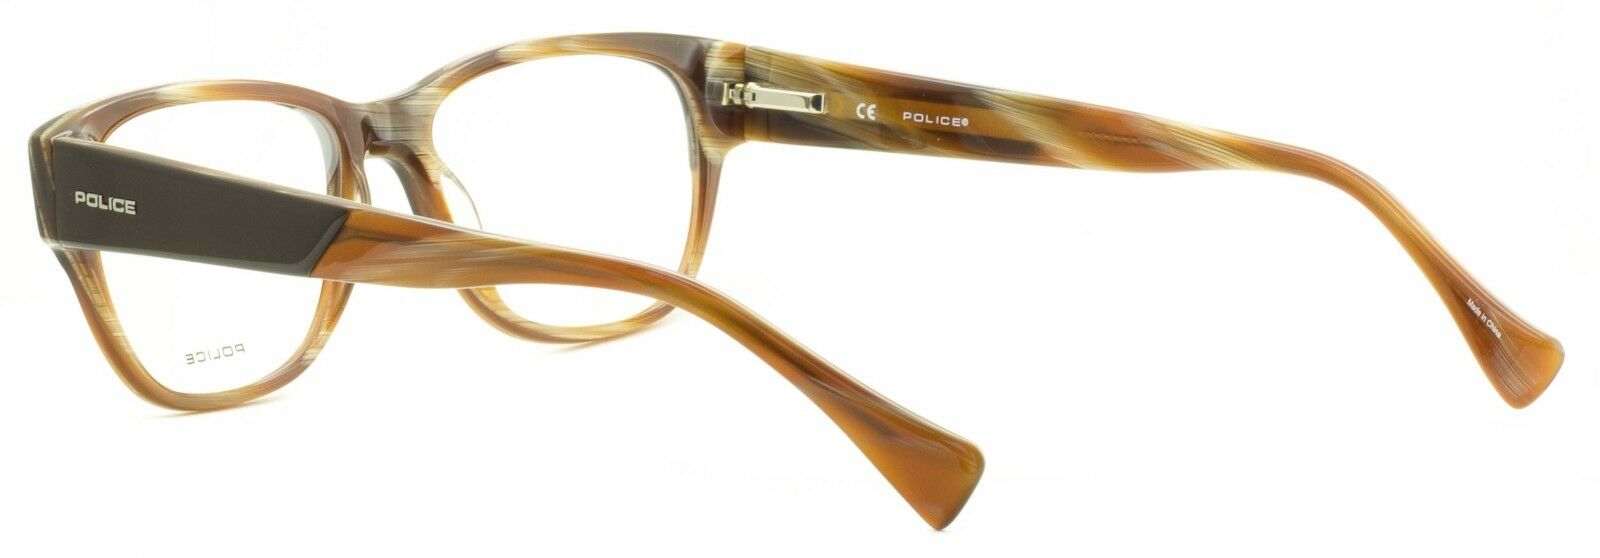 POLICE V 1765 COL 06Z6 Eyewear FRAMES - NEW RX Optical Eyeglasses Glasses - BNIB